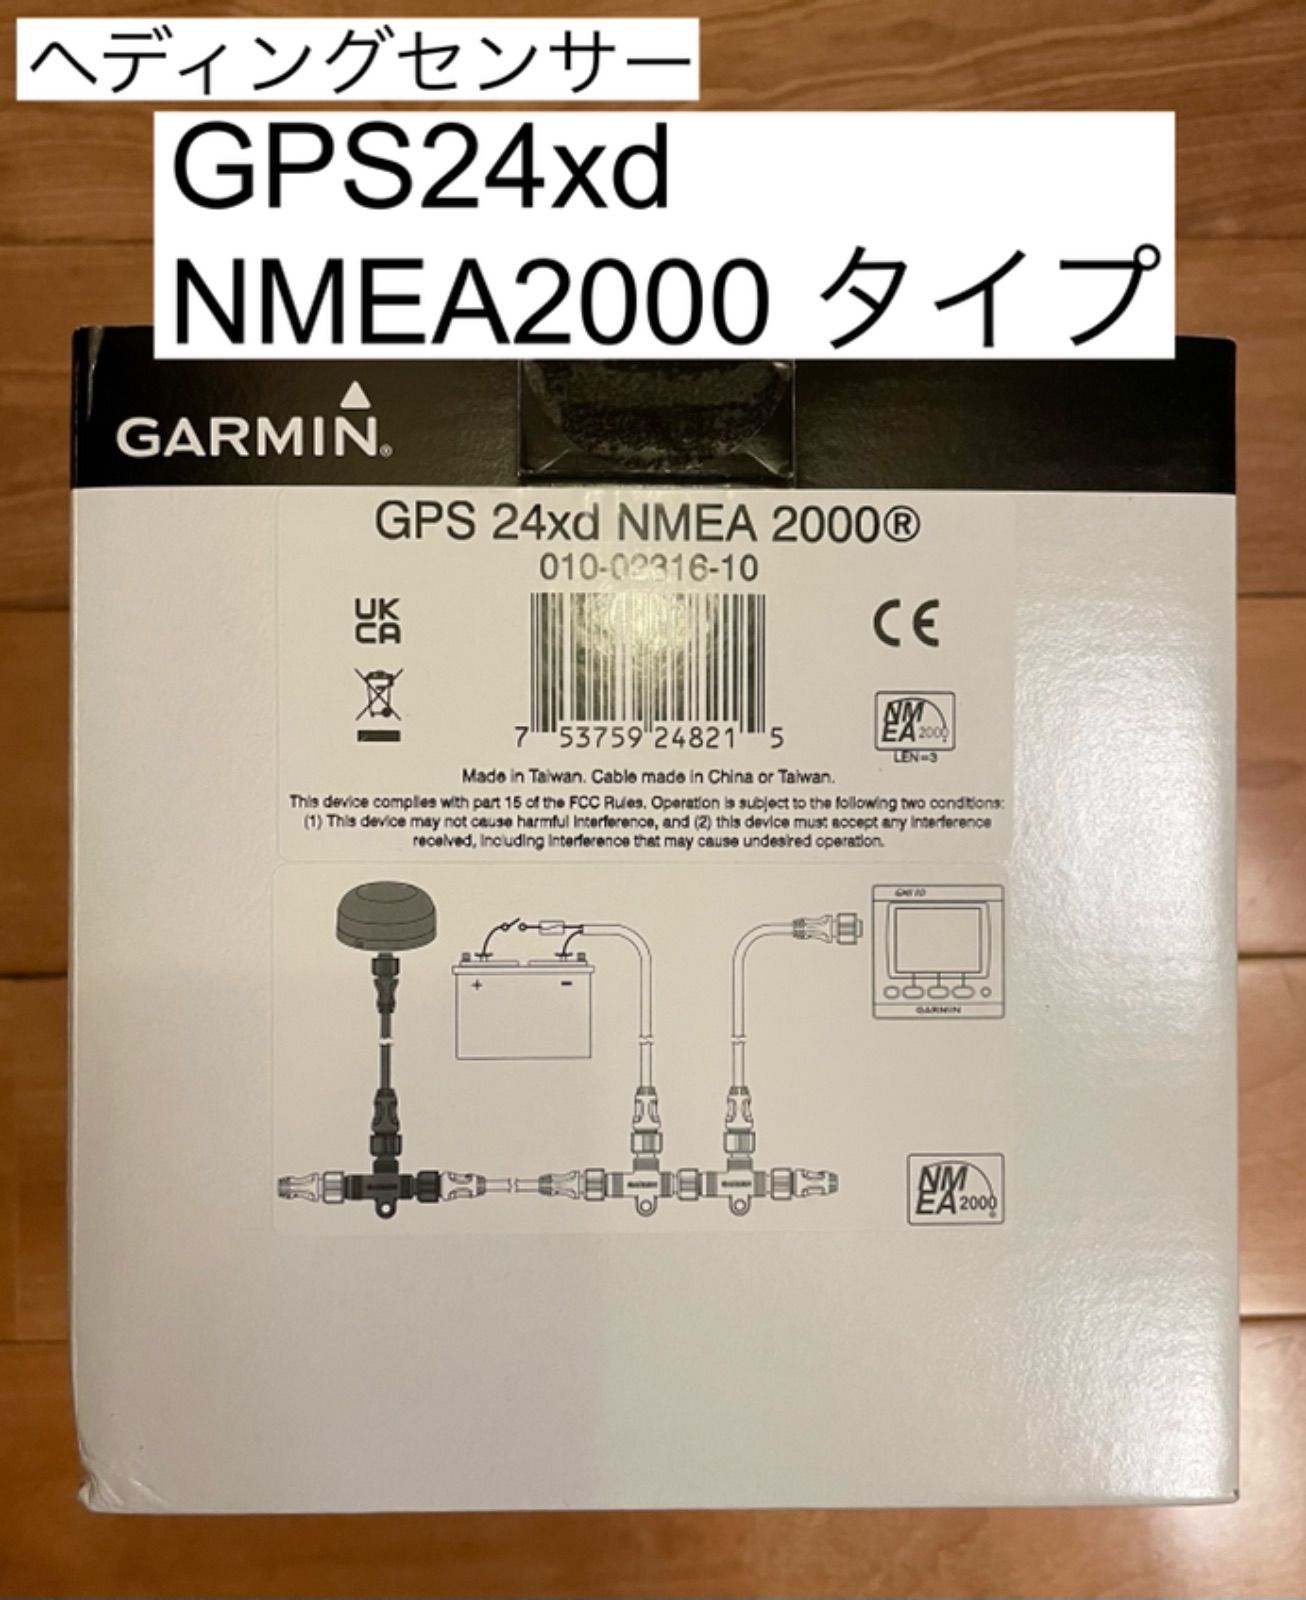 ガーミン ヘディングセンサー GPS24xd NMEA2000タイプ - メルカリ